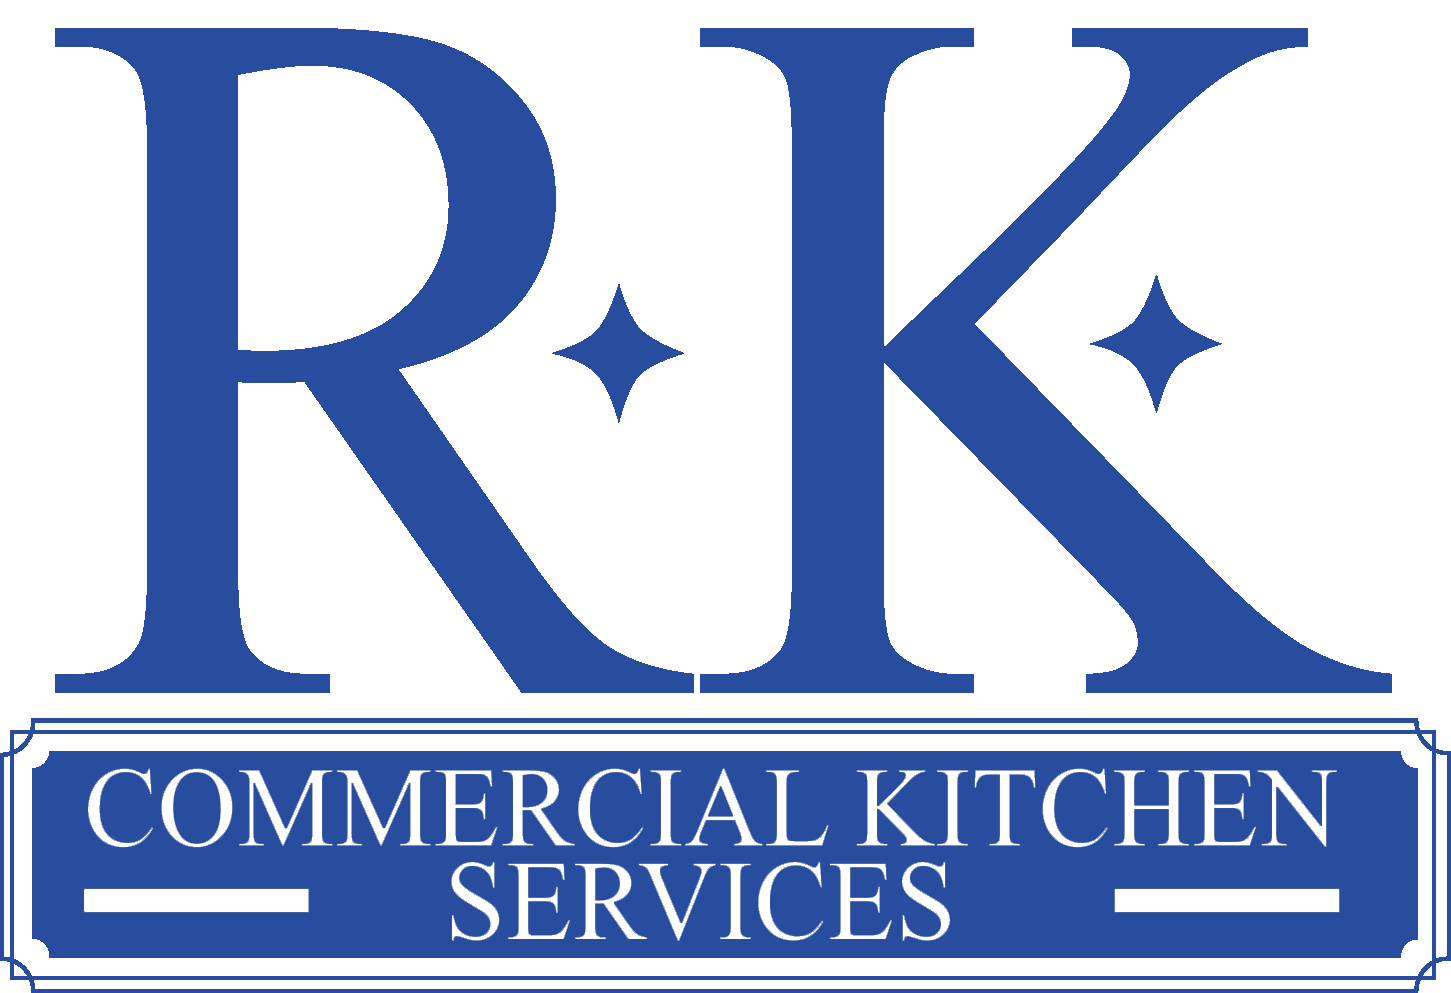 kitchen services